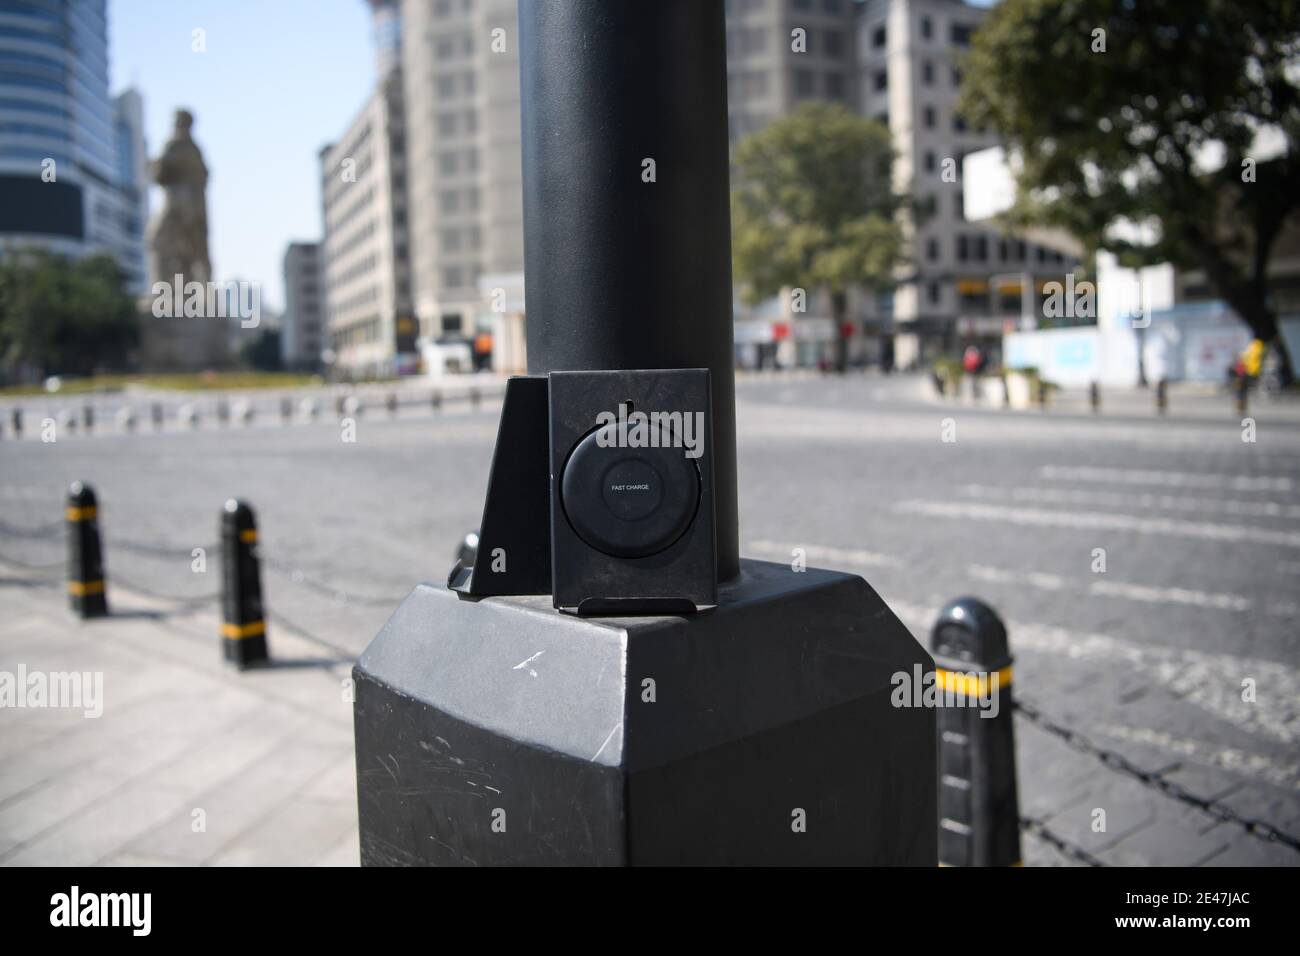 Un gadget fornisce la ricarica wireless per smartphone di pedoni sono visti attaccati ad una lampione nella città di Guangzhou, Cina meridionale¯s Guangdong provincia Foto Stock